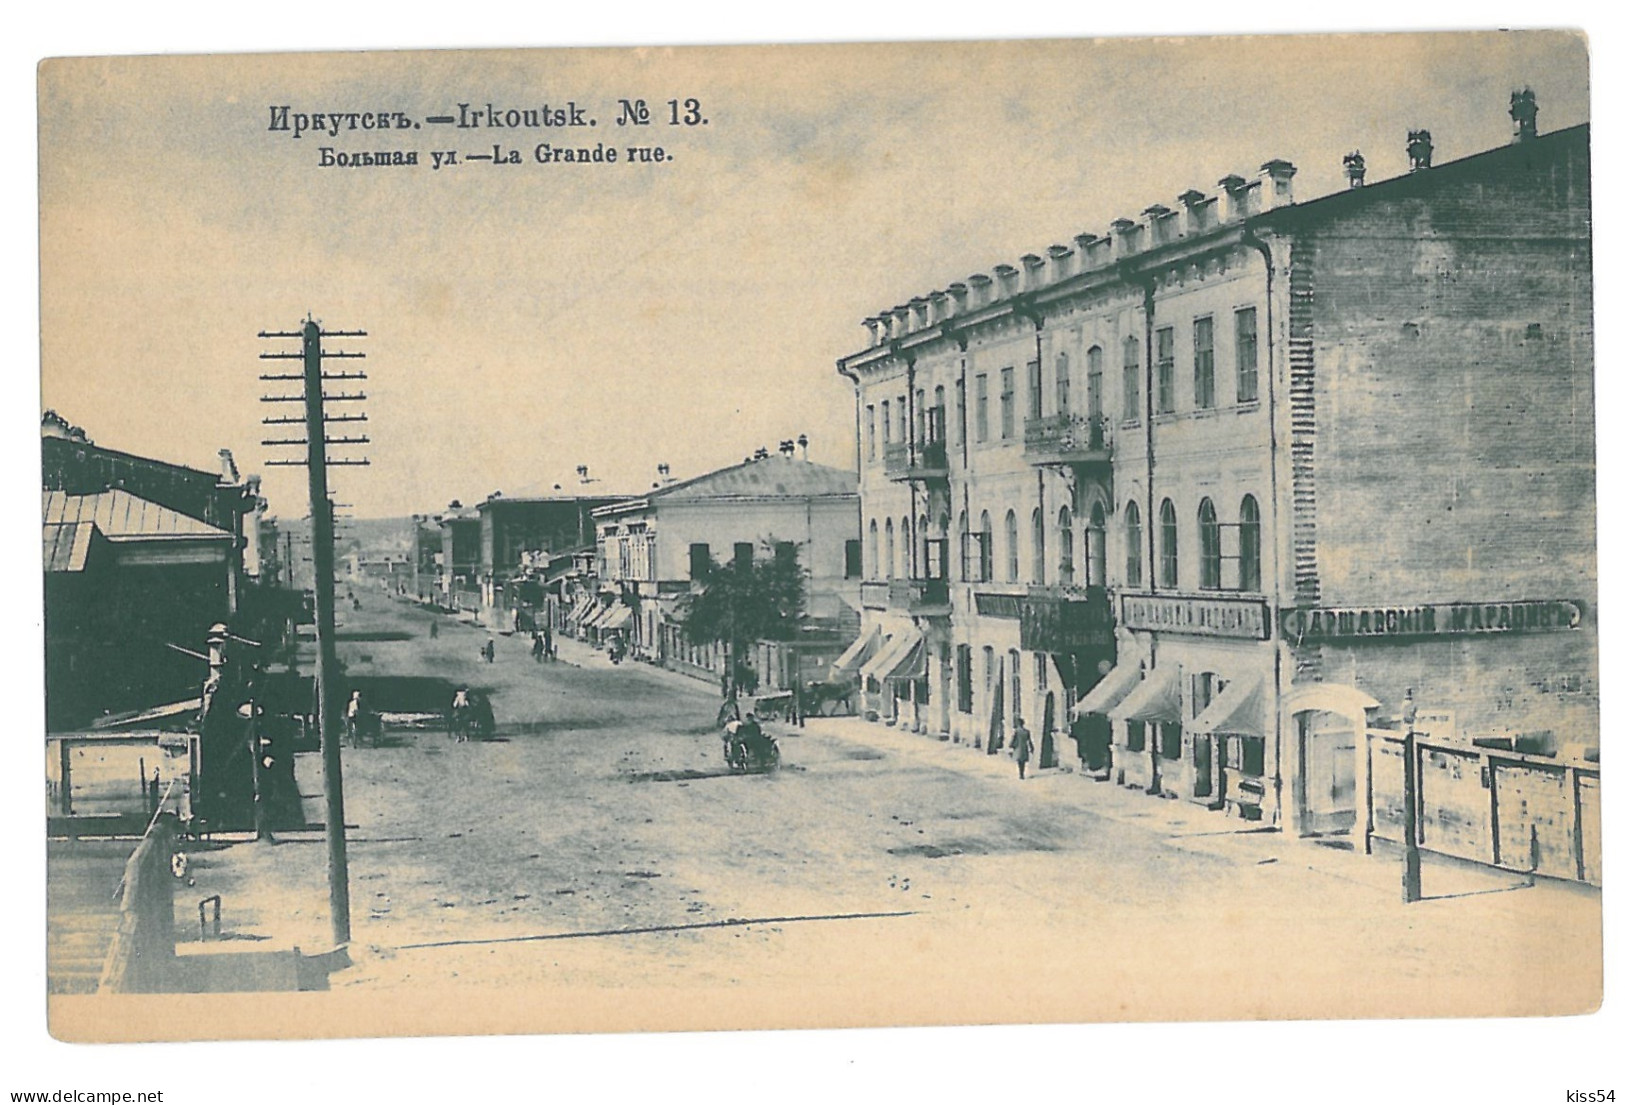 RUS 999 - 15372 IRKUTSK, Big Street, Russia - Old Postcard - Unused - Russia